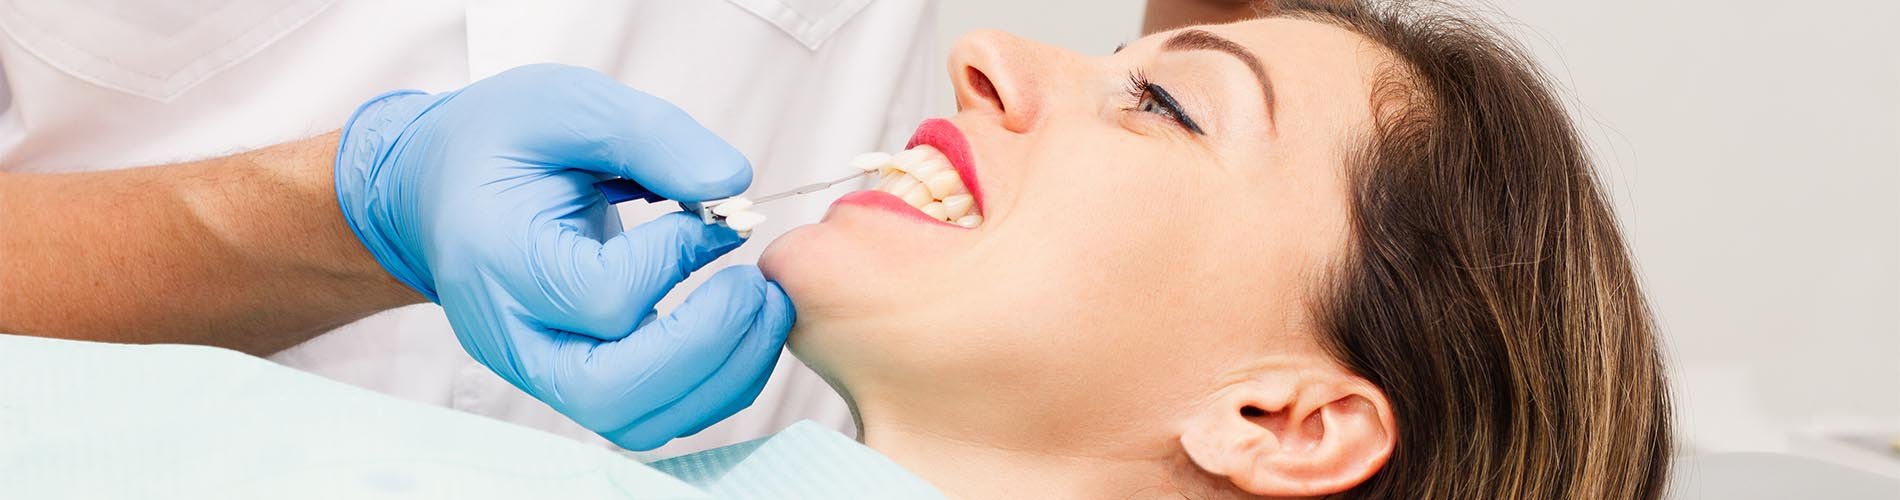 Una visita al dentista puede prevenir una celiaquía